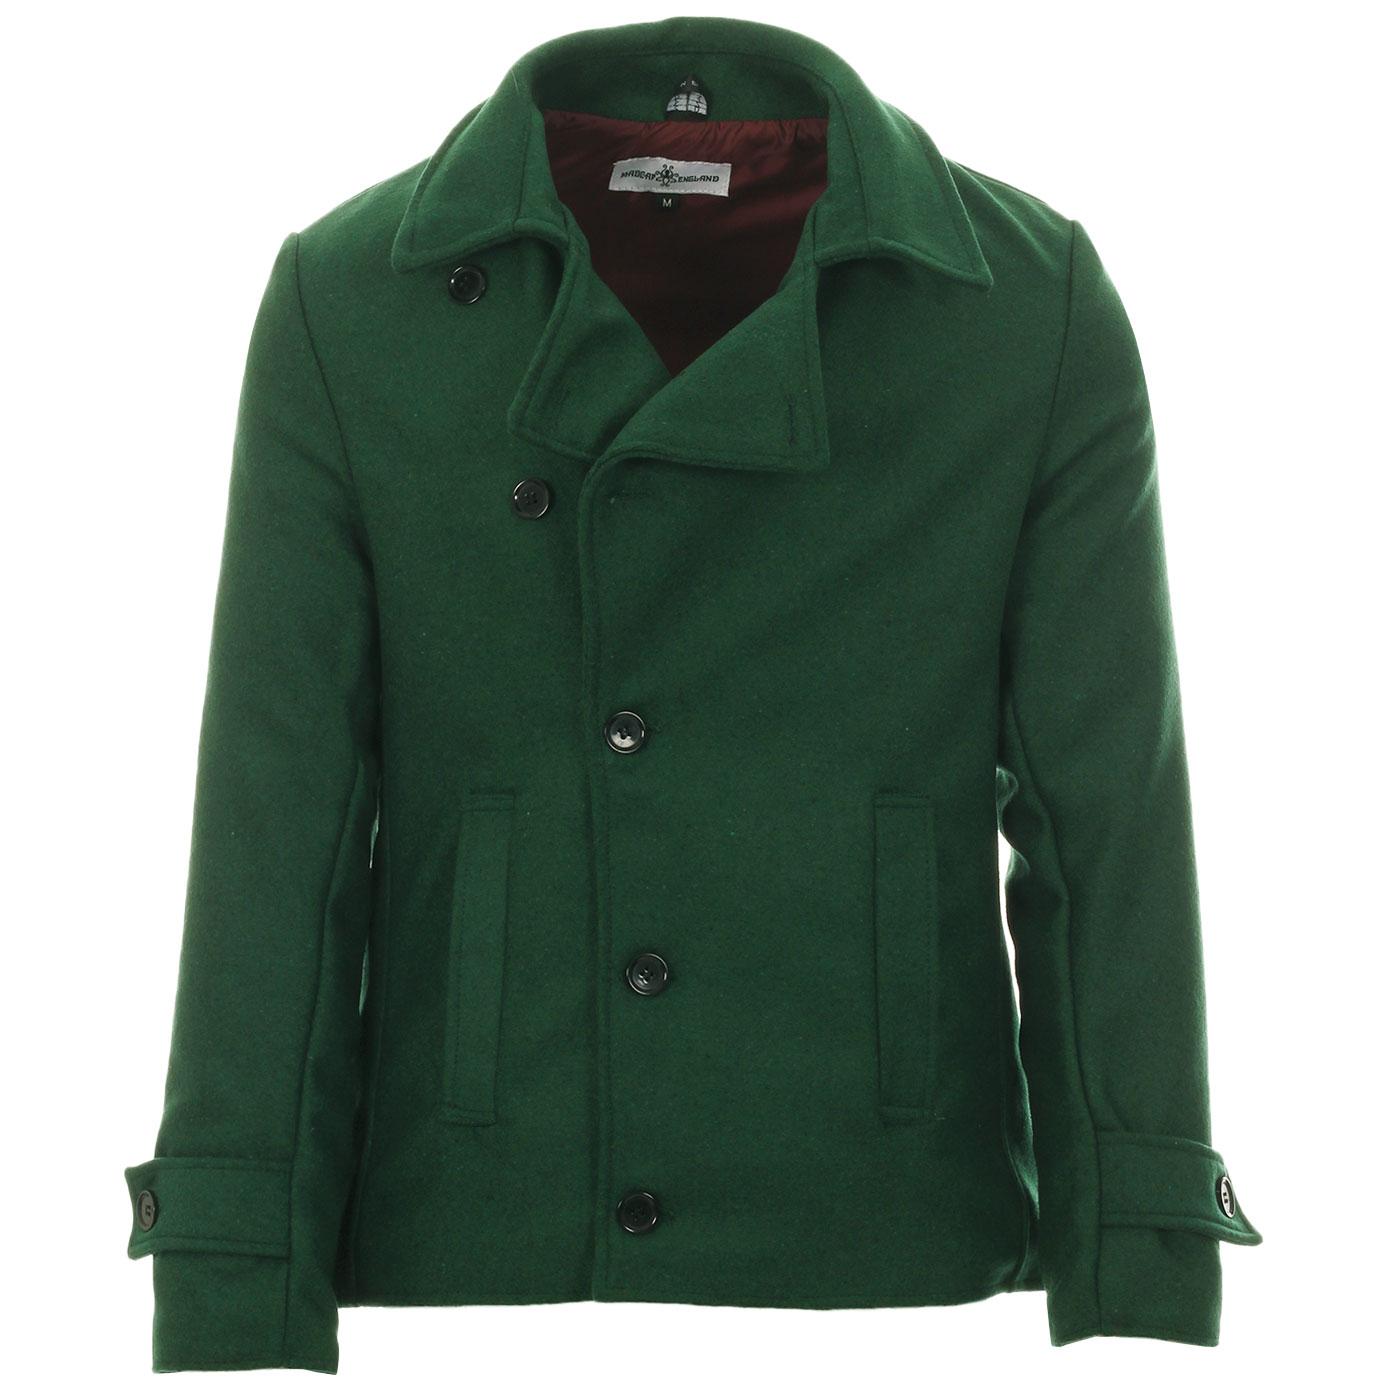 Madcap England Denny 1960s Mod Edwardian Style Melton Short Jacket in Green